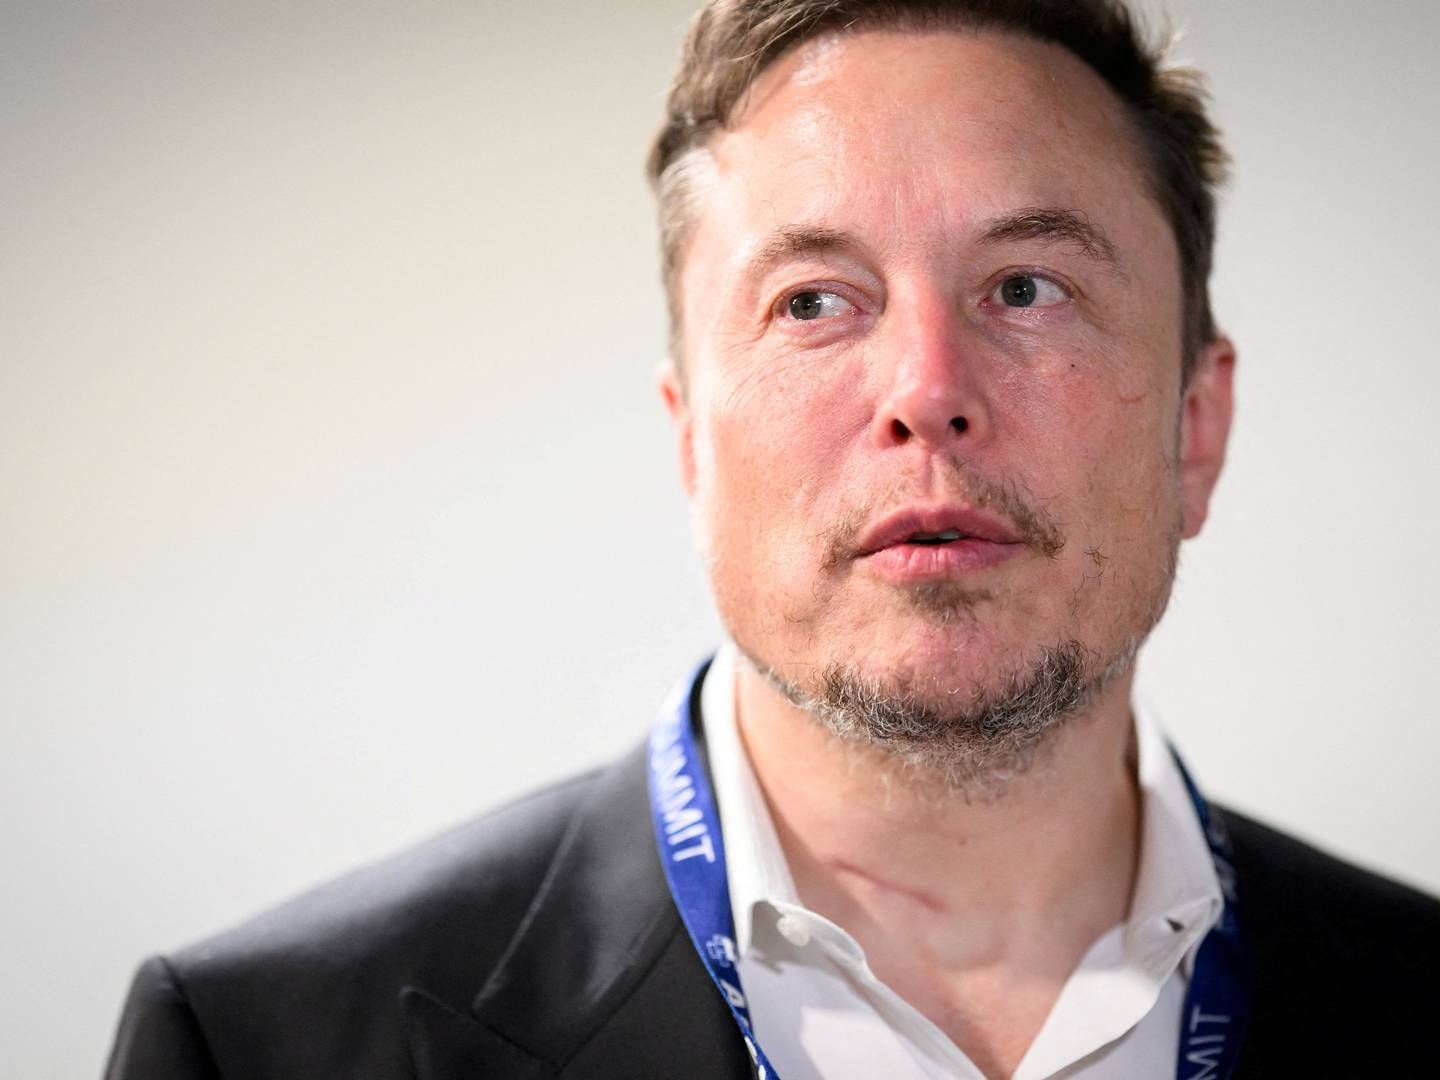 Ifølge nyhedsbureauet Reuters sagsøger Elon Musk ngo’en for bagvaskelse, efter der er bragt en række kritiske historier, der har fået annoncører til at trække sig fra platformen. | Foto: Leon Neal/Pool via REUTERS/Ritzau Scanpix